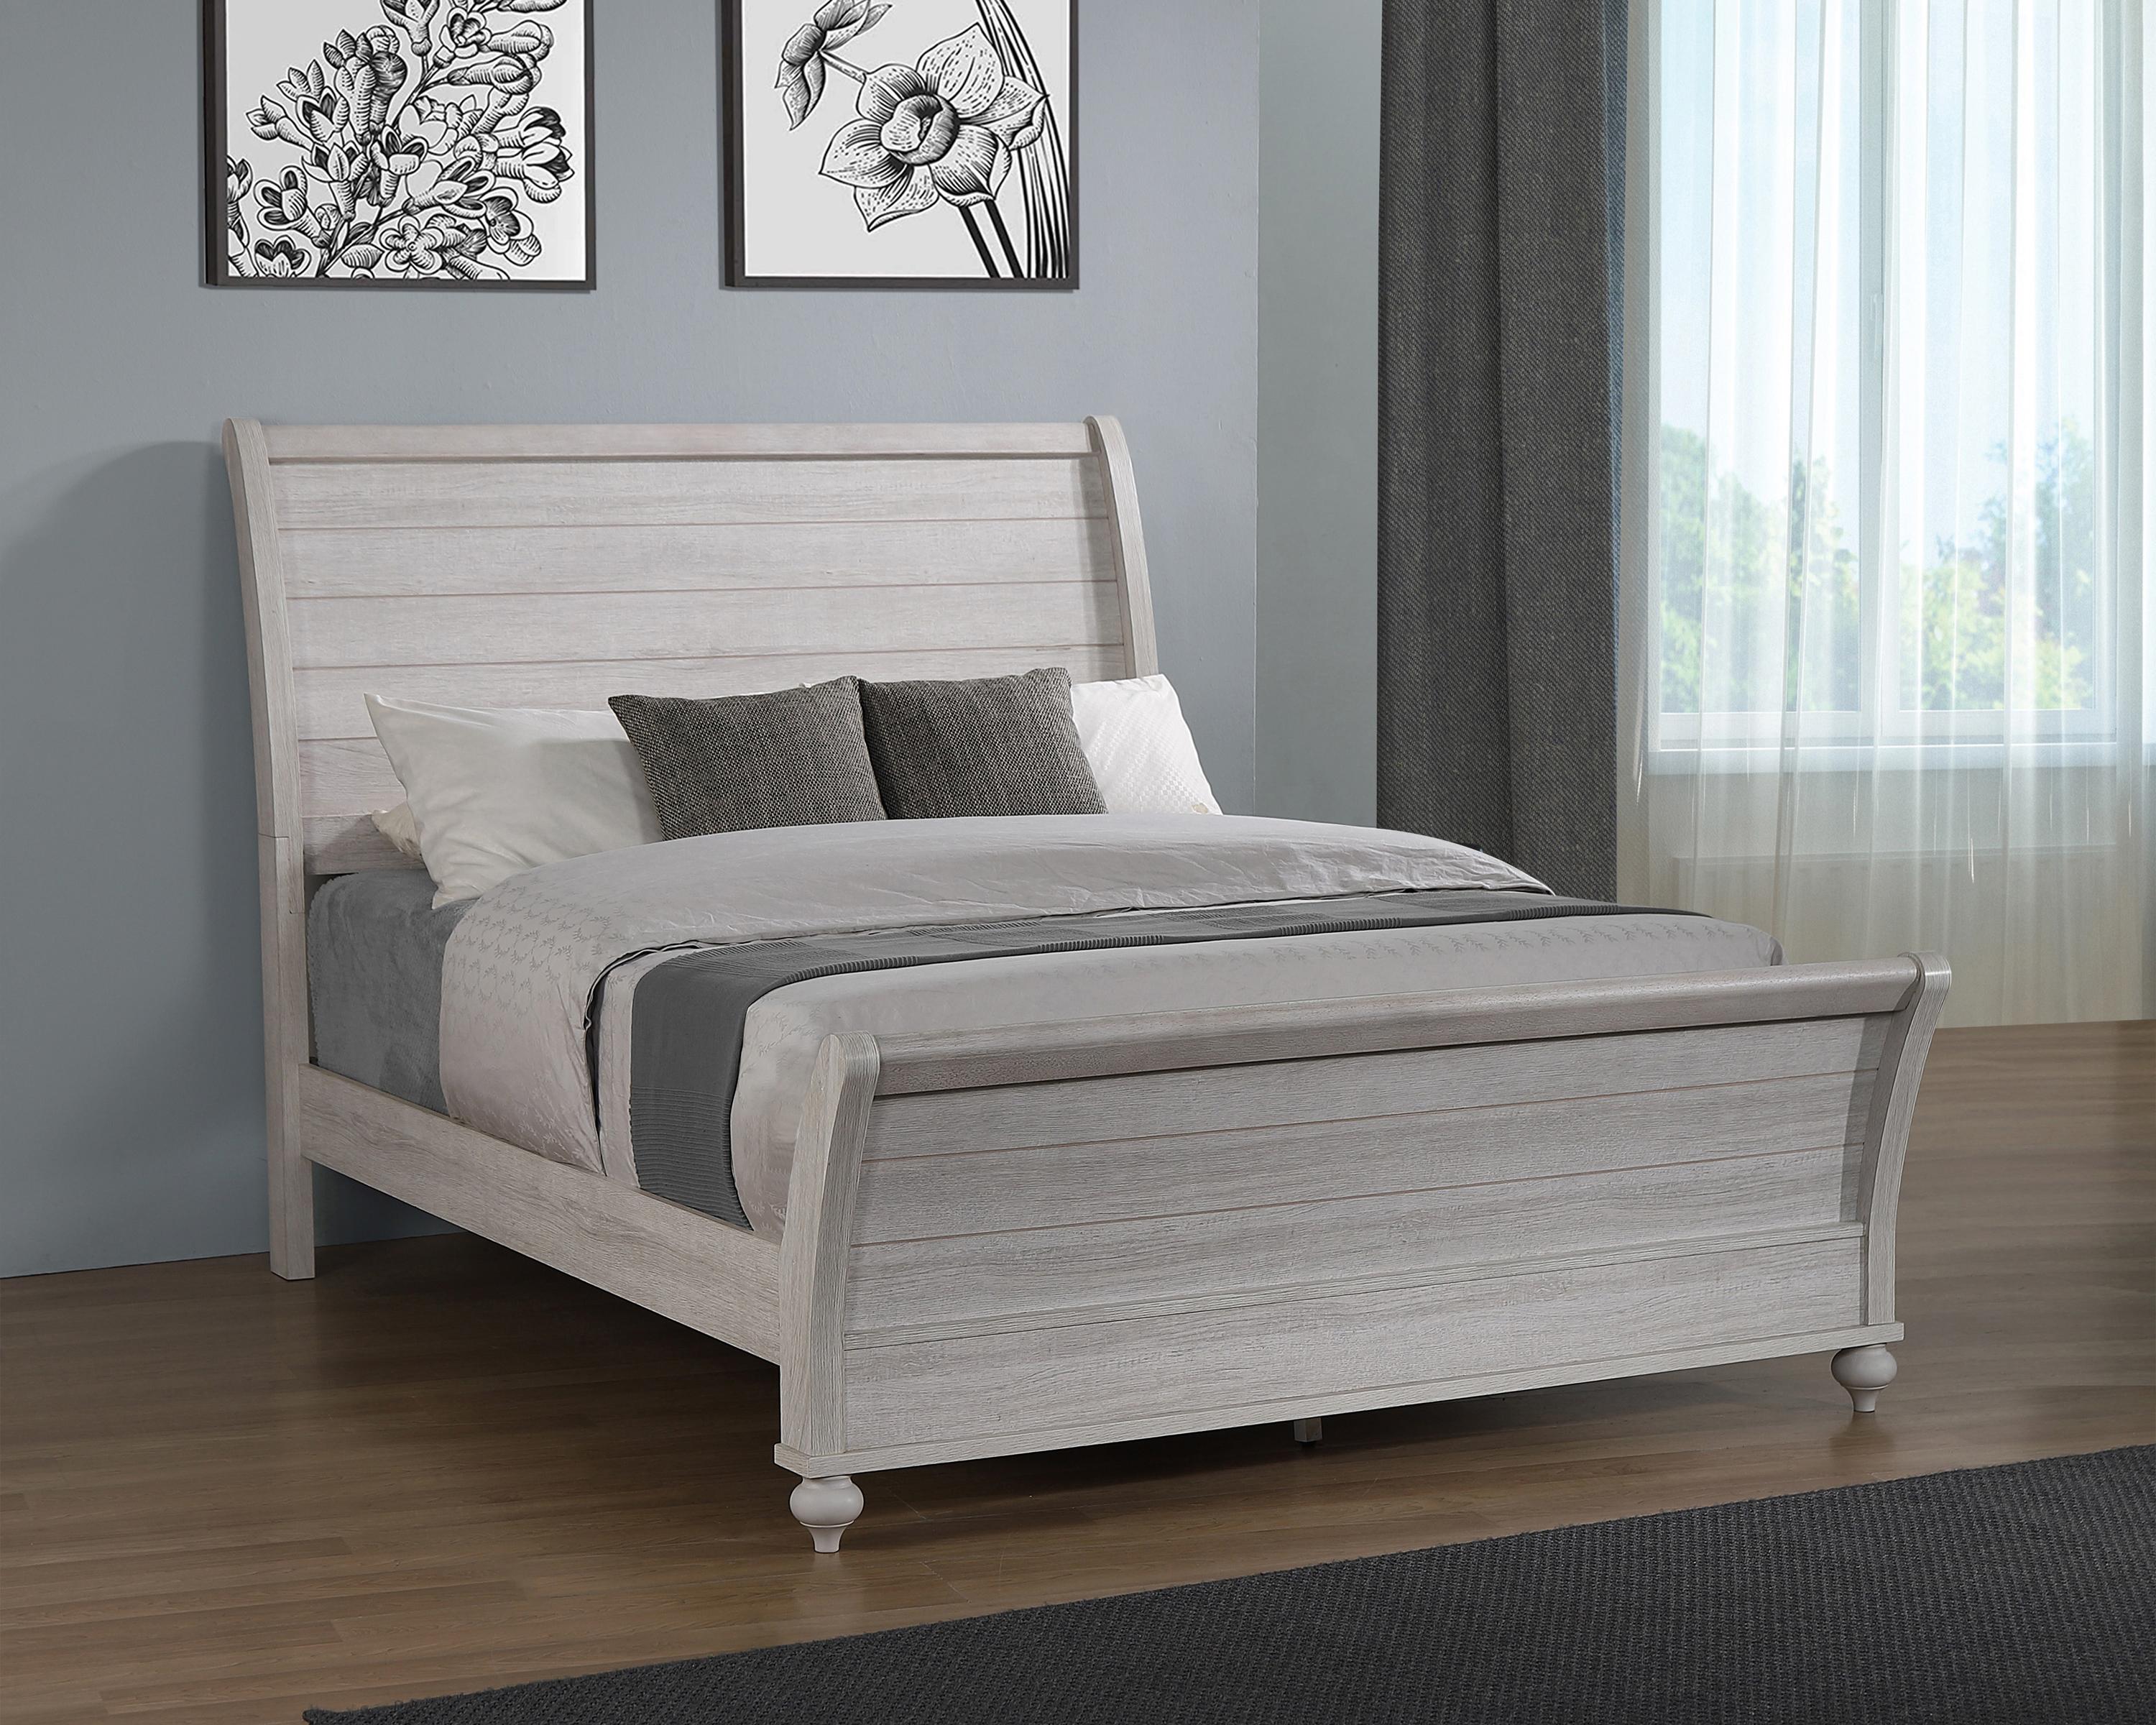 

                    
Coaster 223281KE Stillwood Bed Linen  Purchase 
